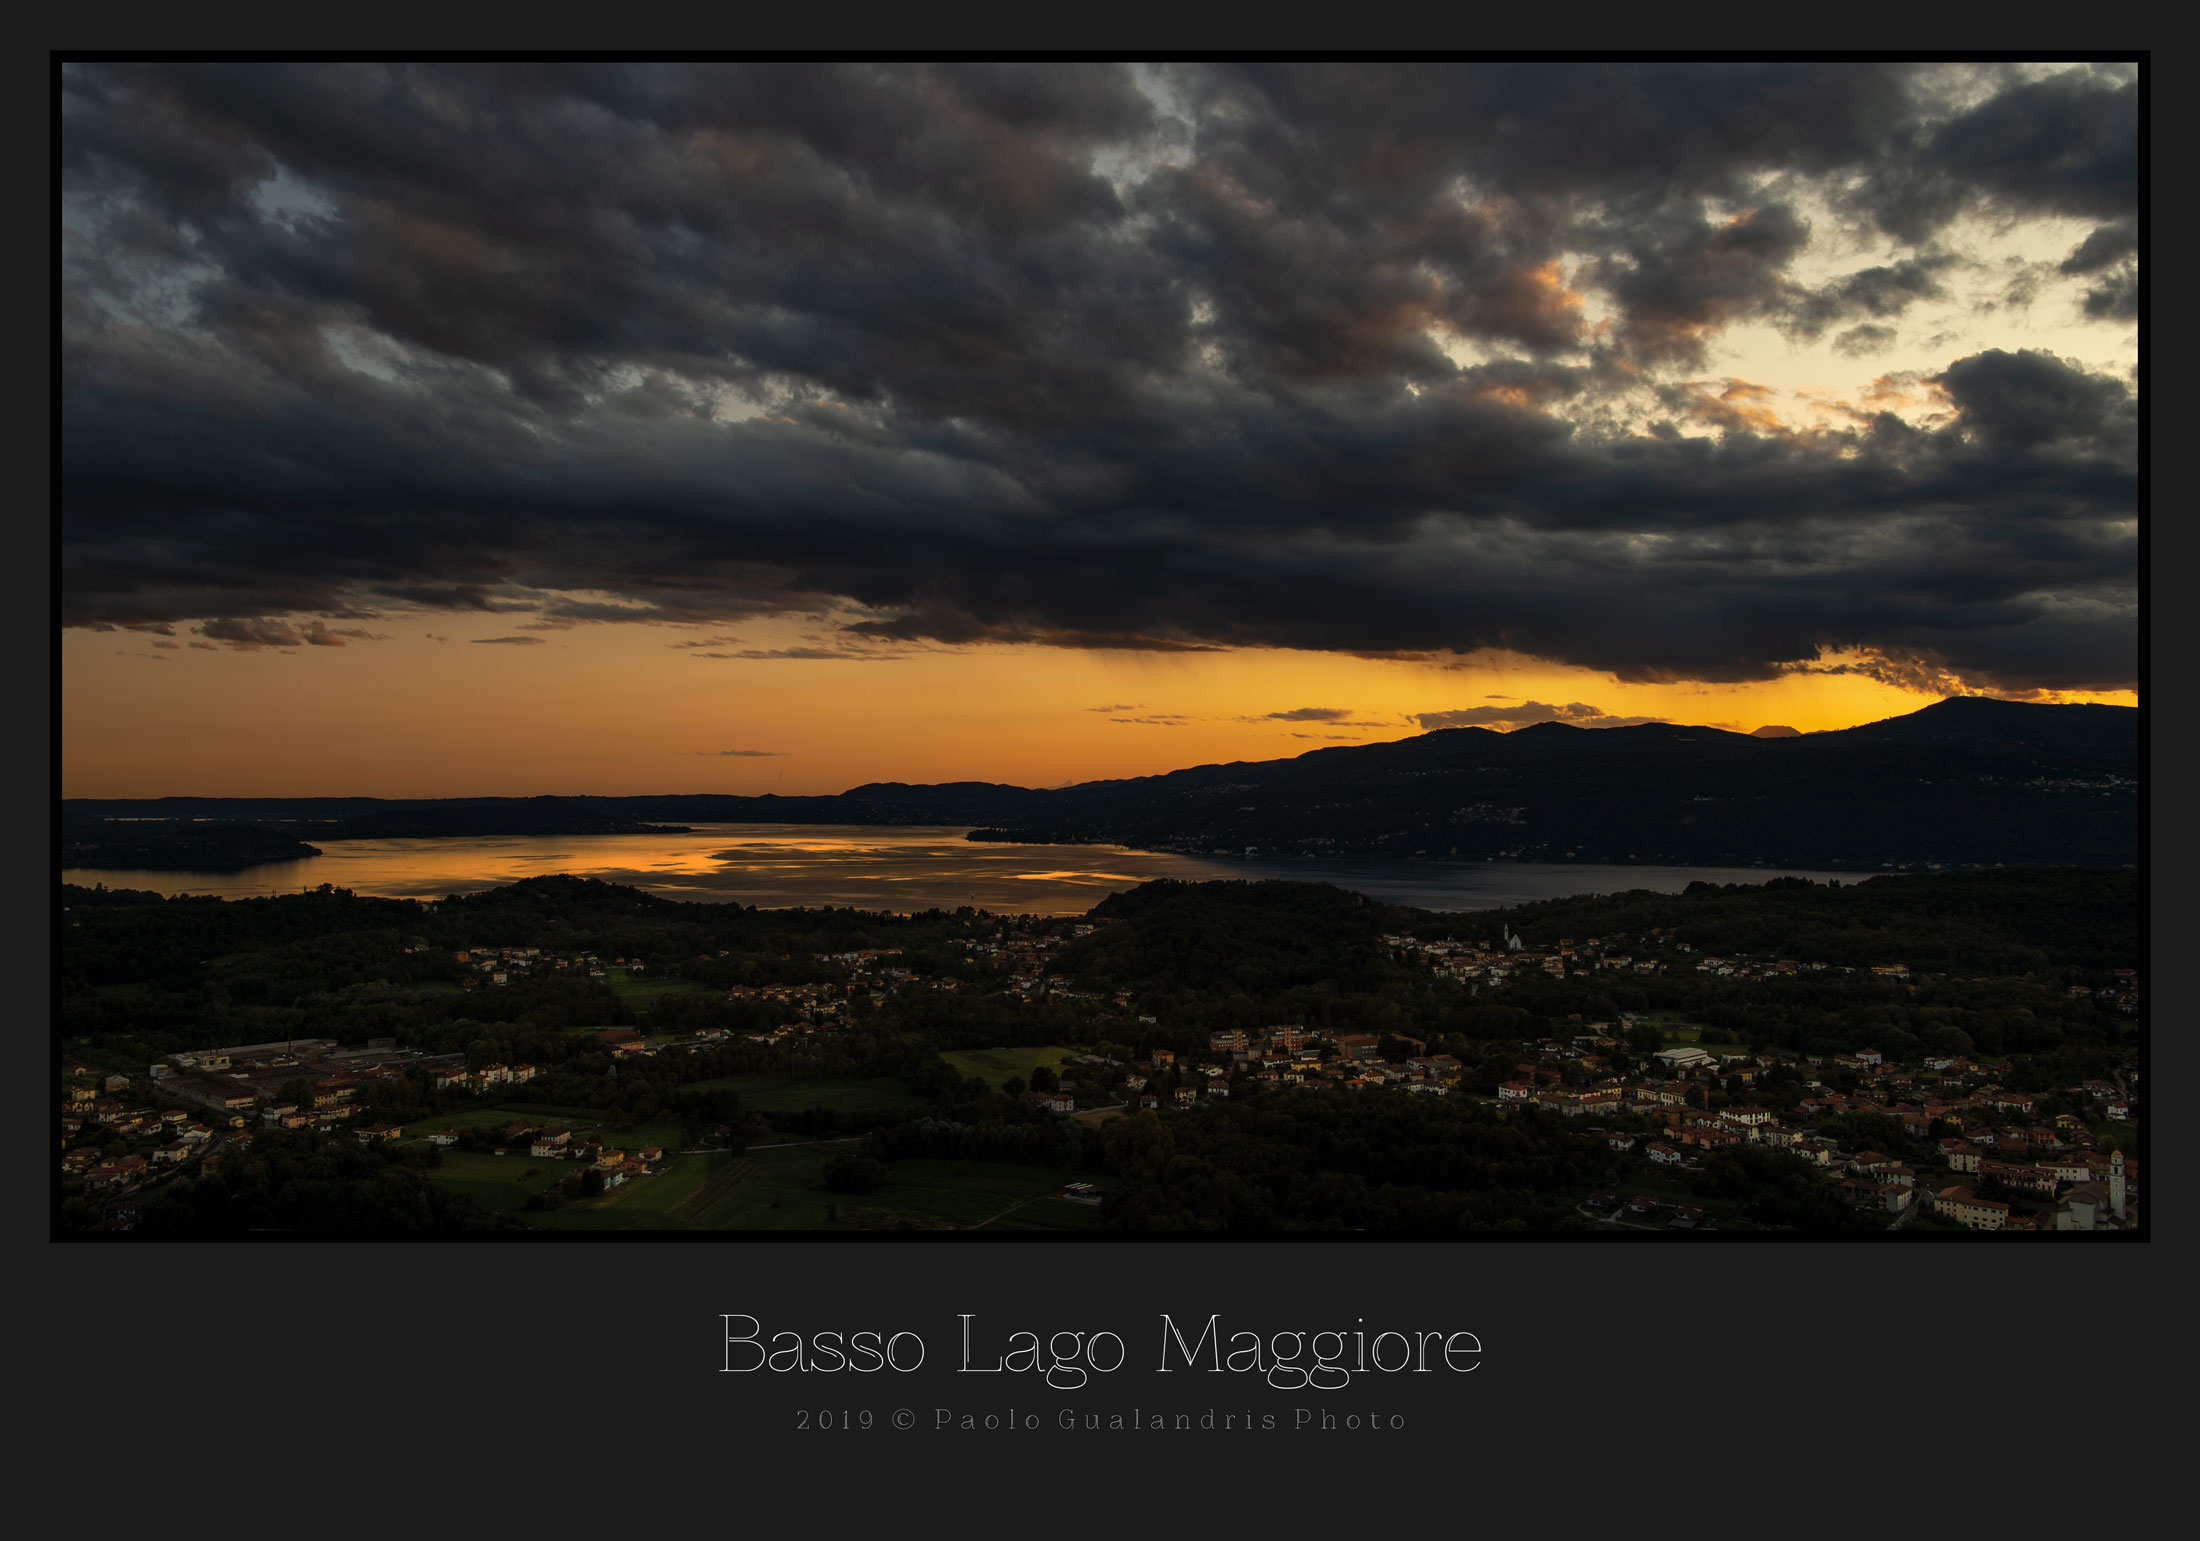 Basso Lago Maggiore...